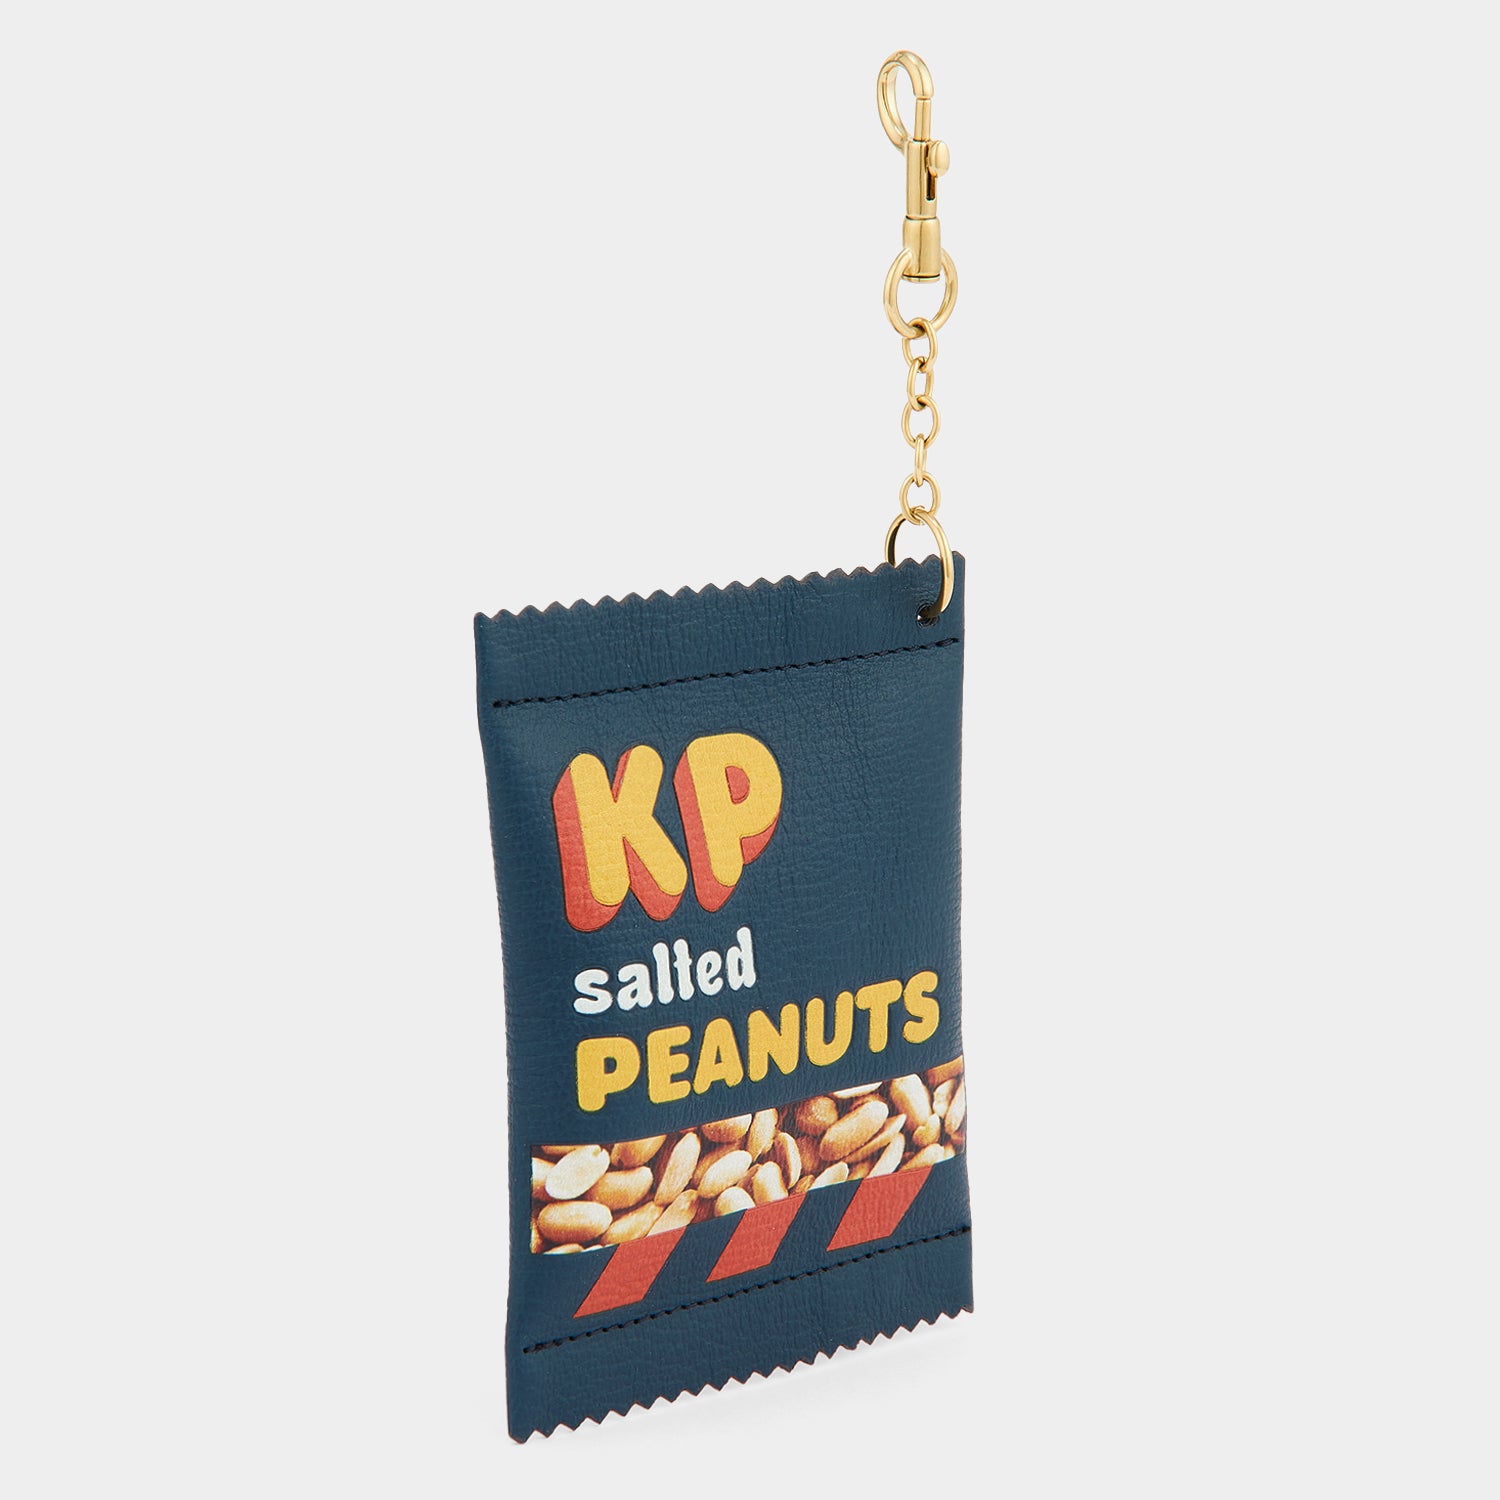 「KP Peanuts」コイン パース -

                  
                    Shiny Capra in Dark Petrol -
                  

                  Anya Hindmarch JP
